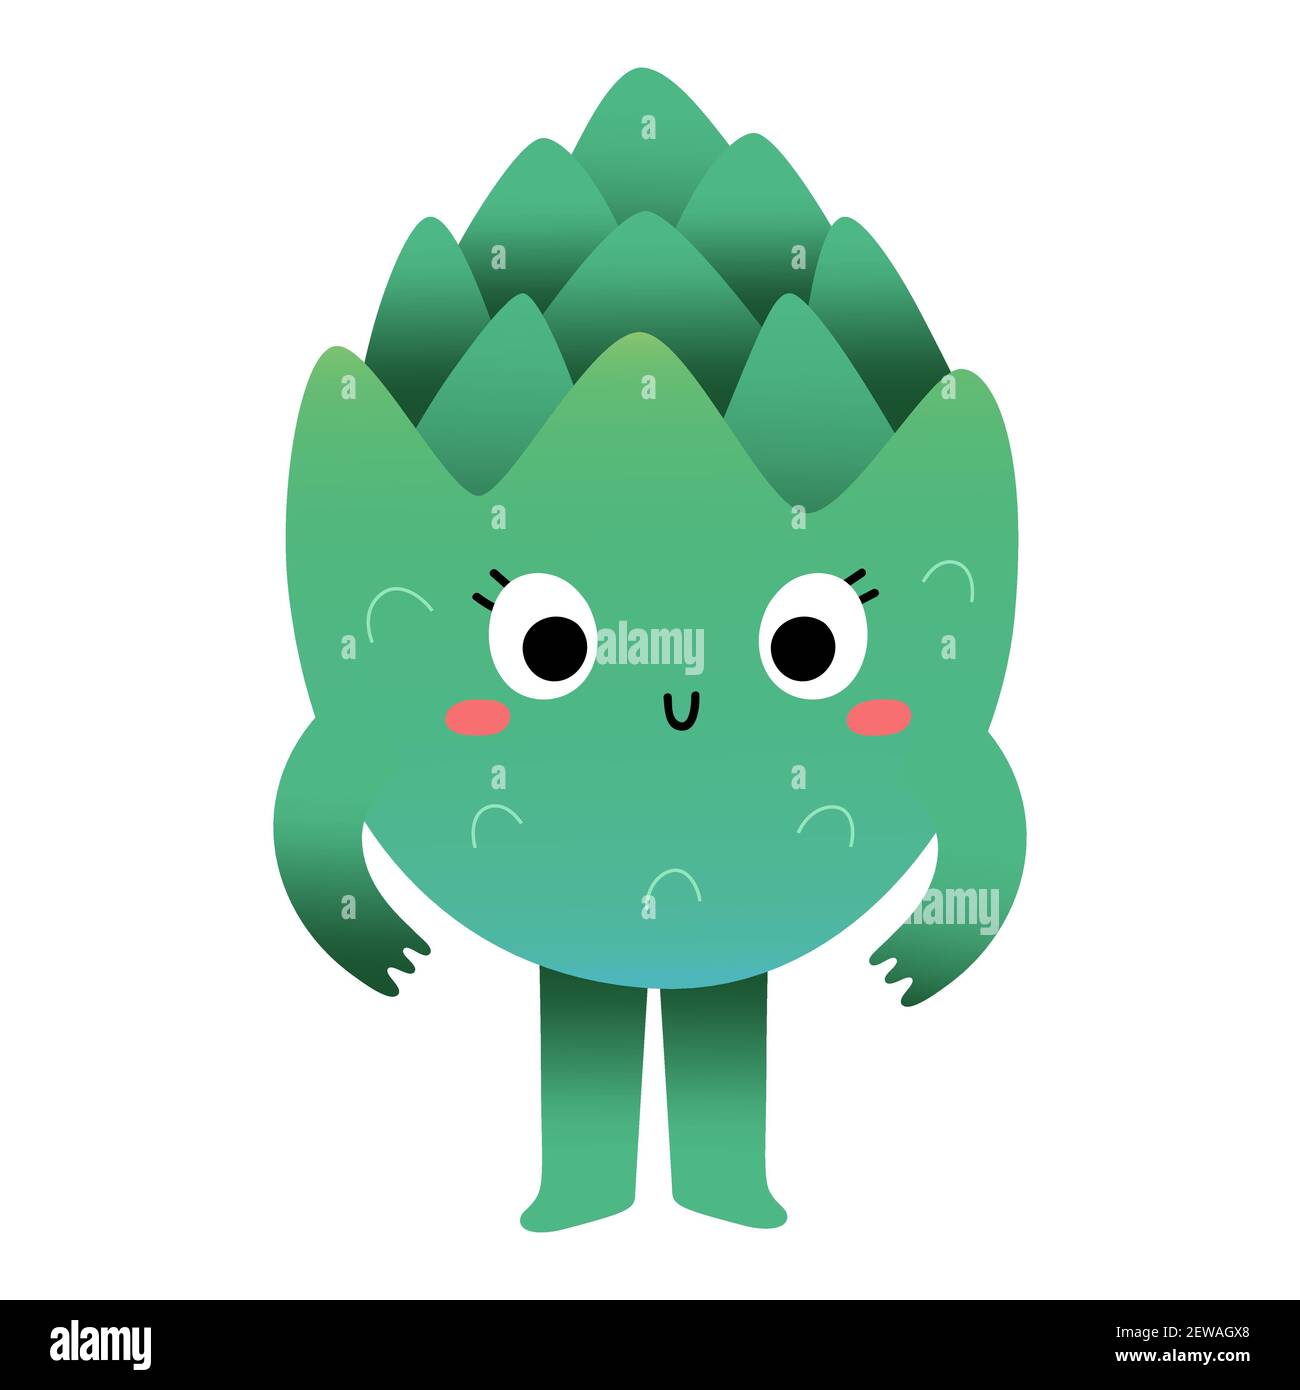 Adorable personnage d'artichaut, mascotte de légumes vert sain pour les enfants, personnage de dessin animé kawaii veggie avec drôle d'expression de visage, illustration vectorielle Illustration de Vecteur